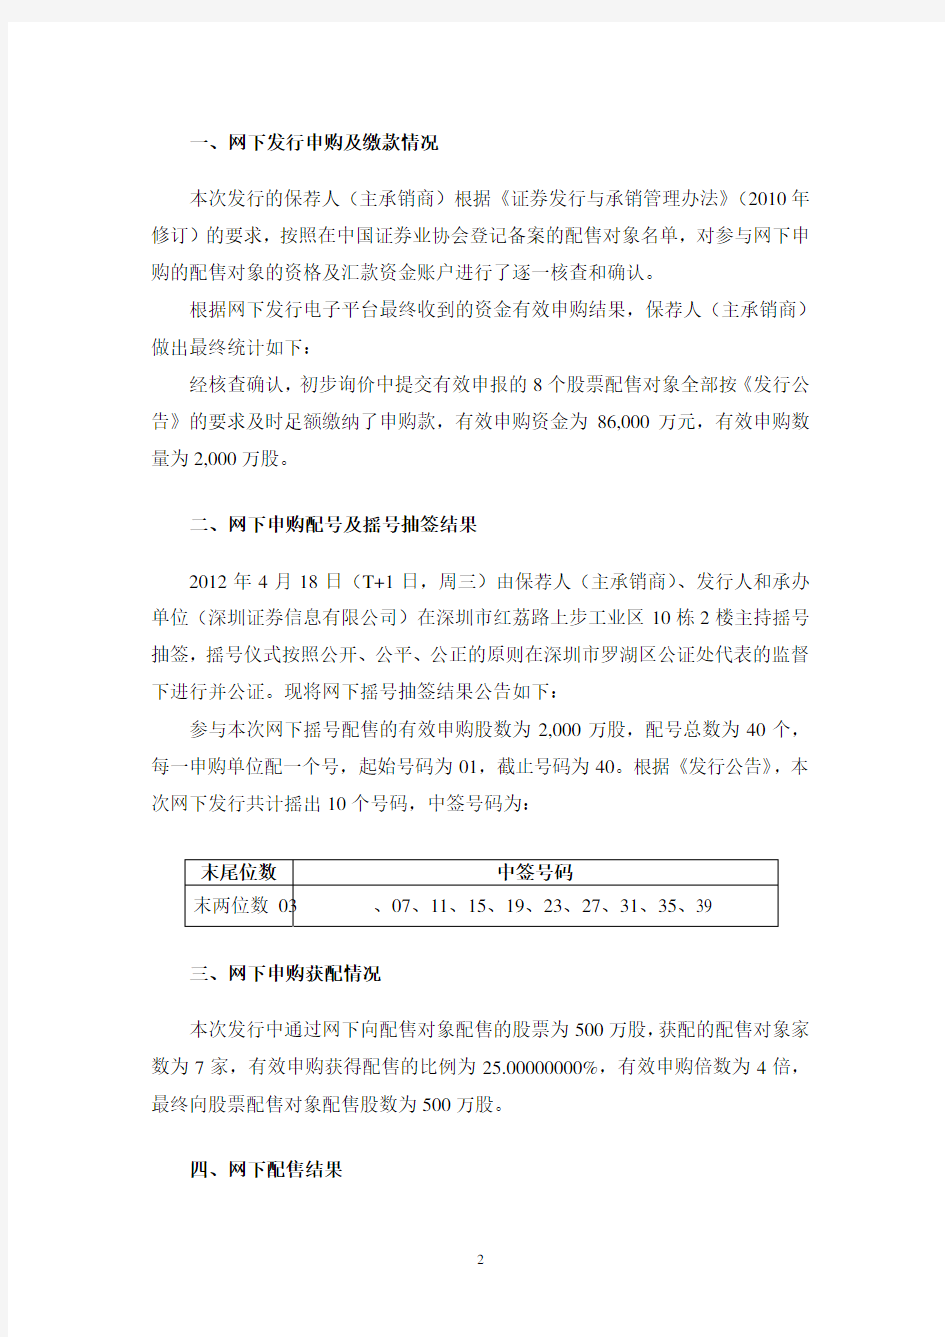 东江环保股份有限公司 首次公开发行股票网下摇号抽签及配售结果公告